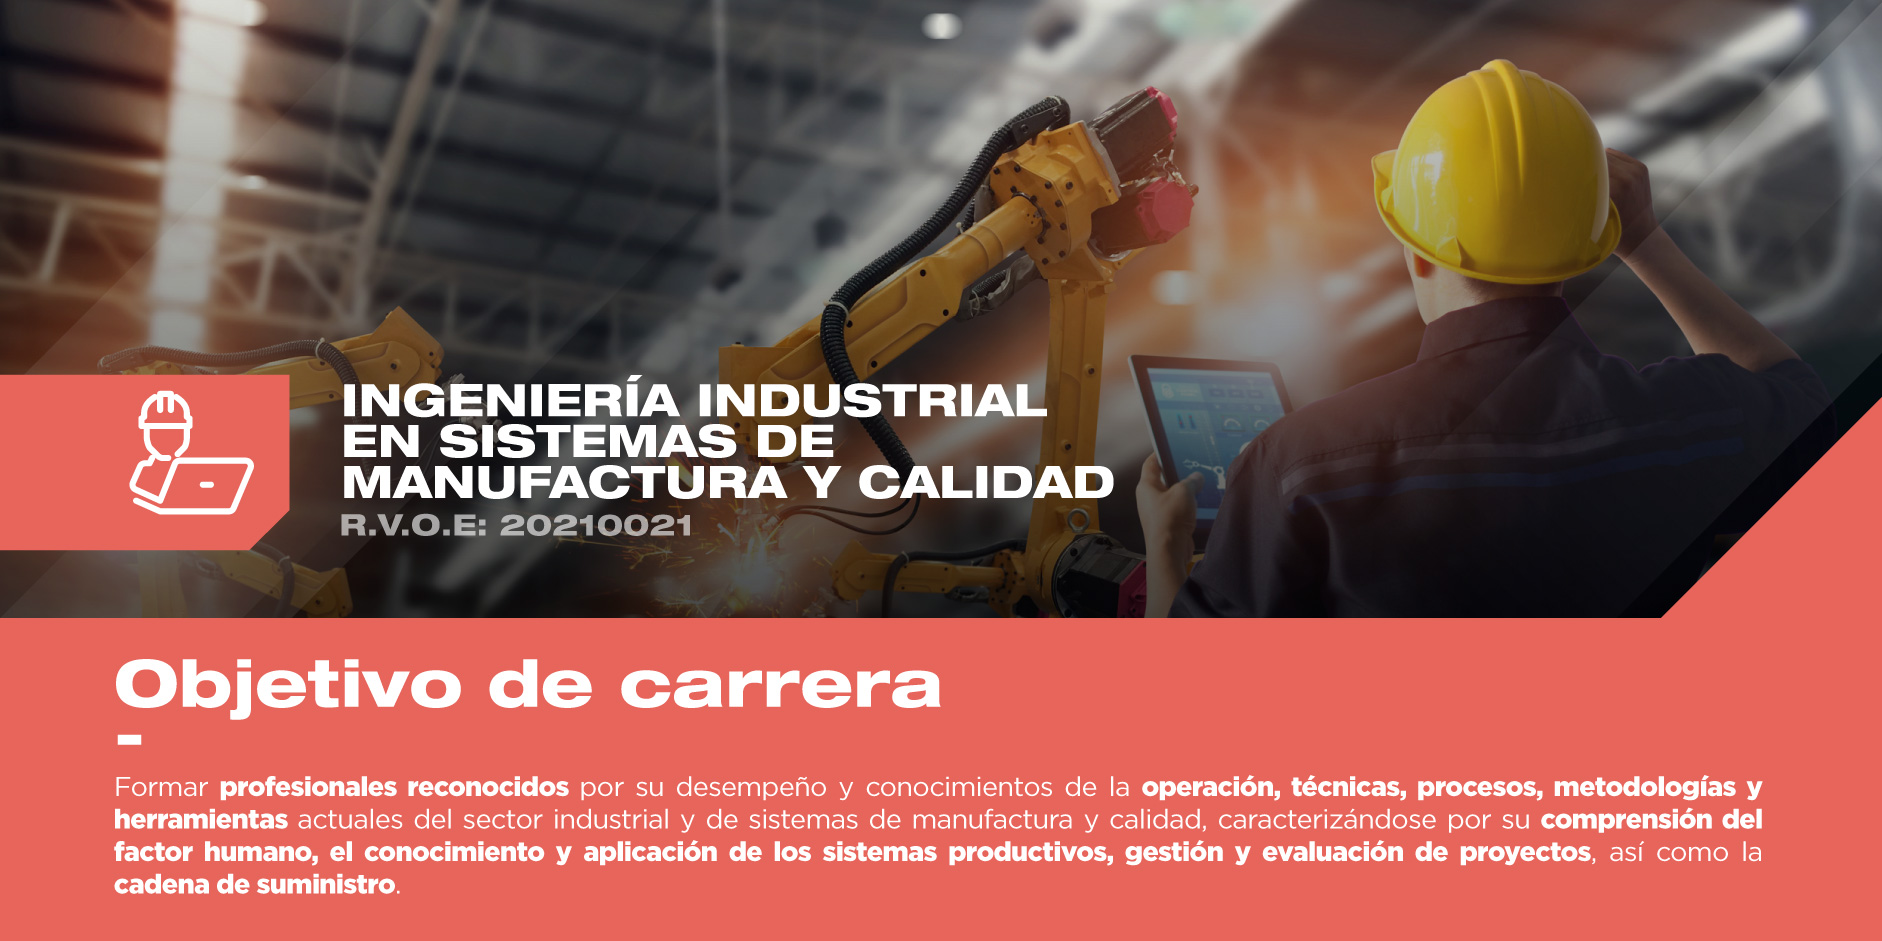 ¿Te interesa estudiar Ingeniería Industrial? Conoce el objetivo de este programa y sé parte de él en la mejor universidad privada de Querétaro.